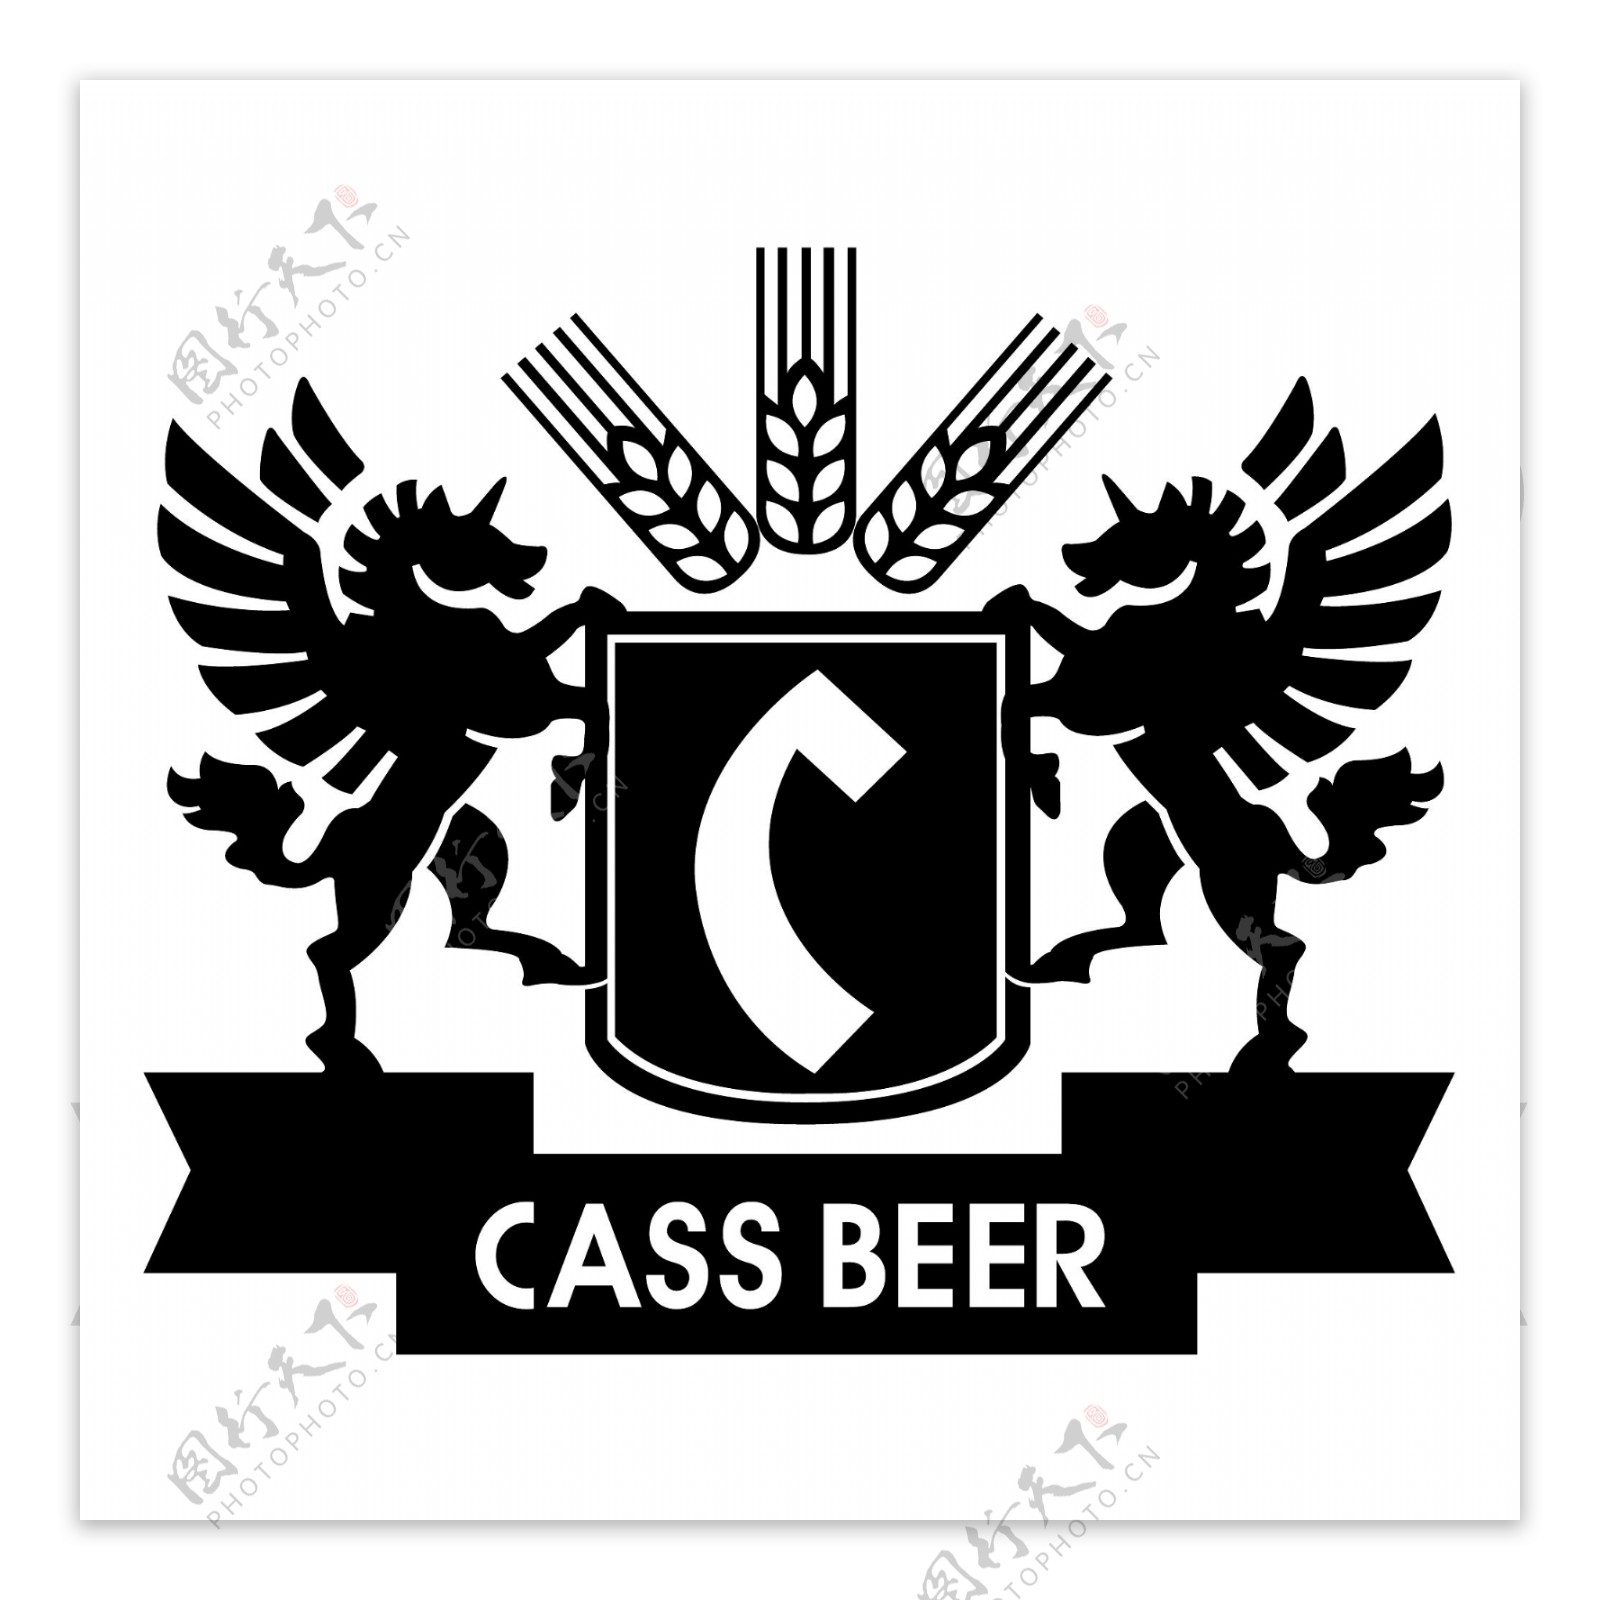 CASS啤酒